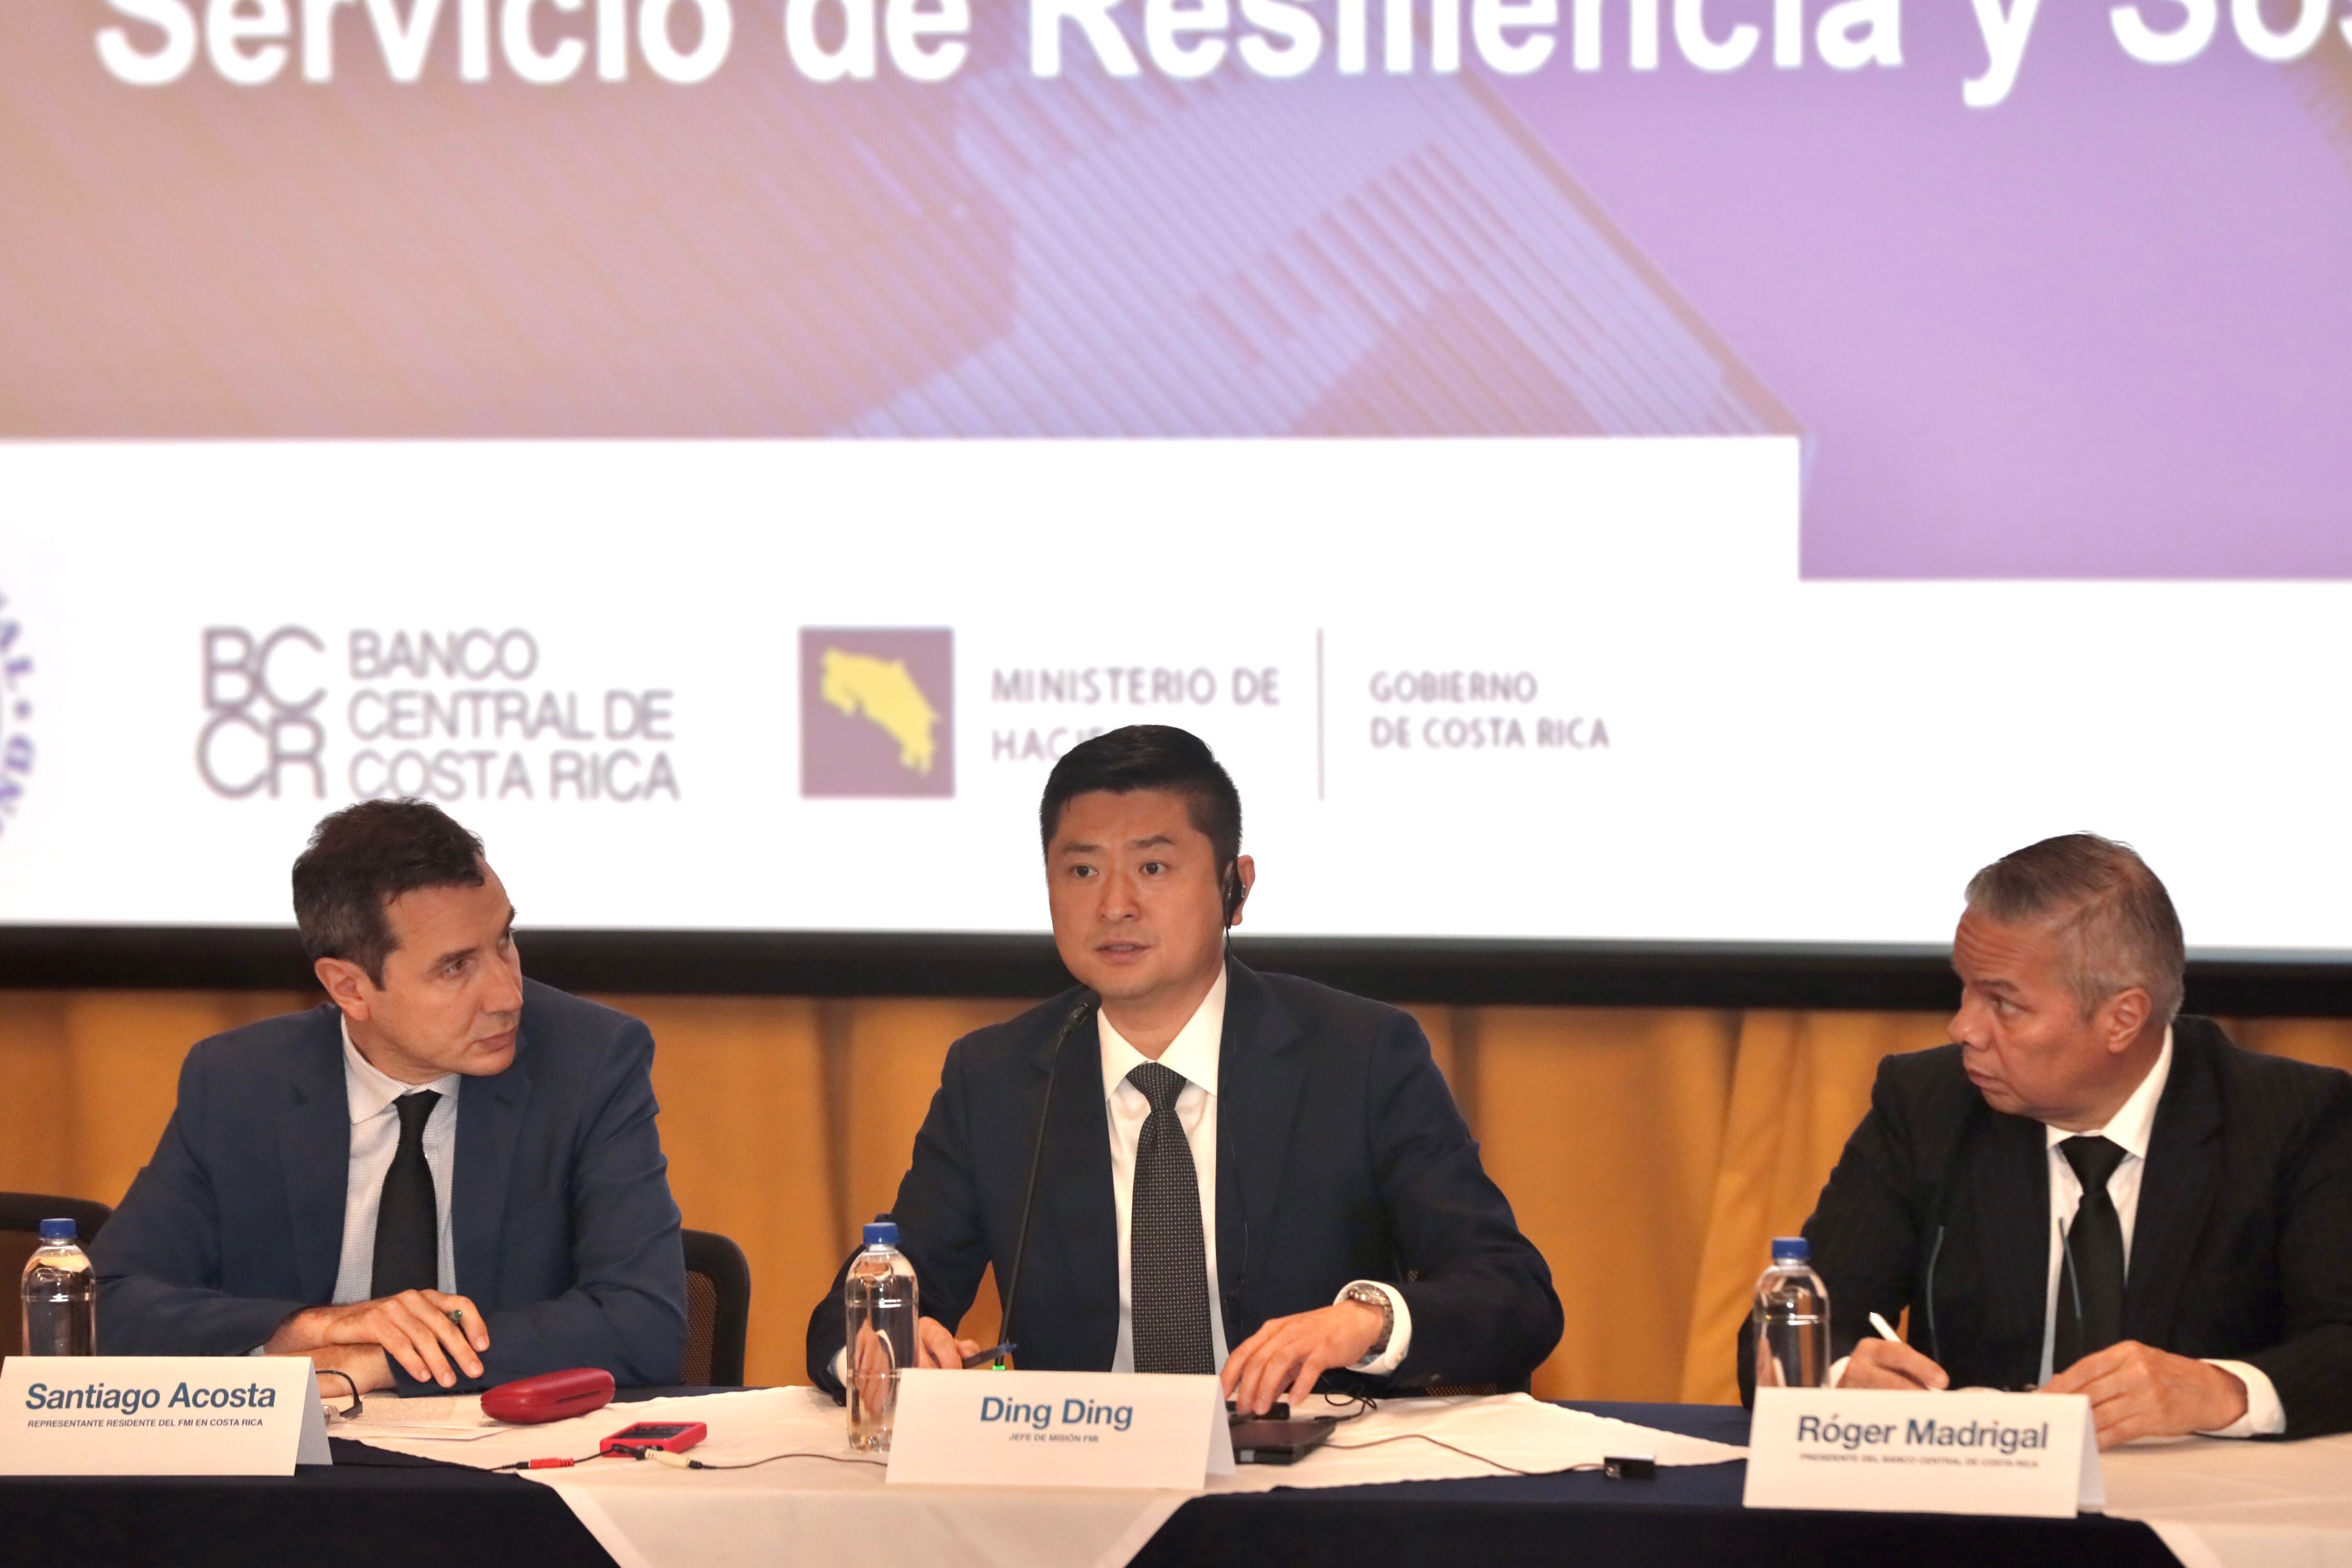 Ding Ding, jefe de la Misión del FMI, informó de que Costa Rica superó la revisión que da acceso a nuevos desembolsos de recursos, y ahora estos deben ser aprobados por el Directorio Ejecutivo. A su lado, Santiago Acosta (izquierda), del FMI; y Róger Madrigal, presidente del Banco Central.